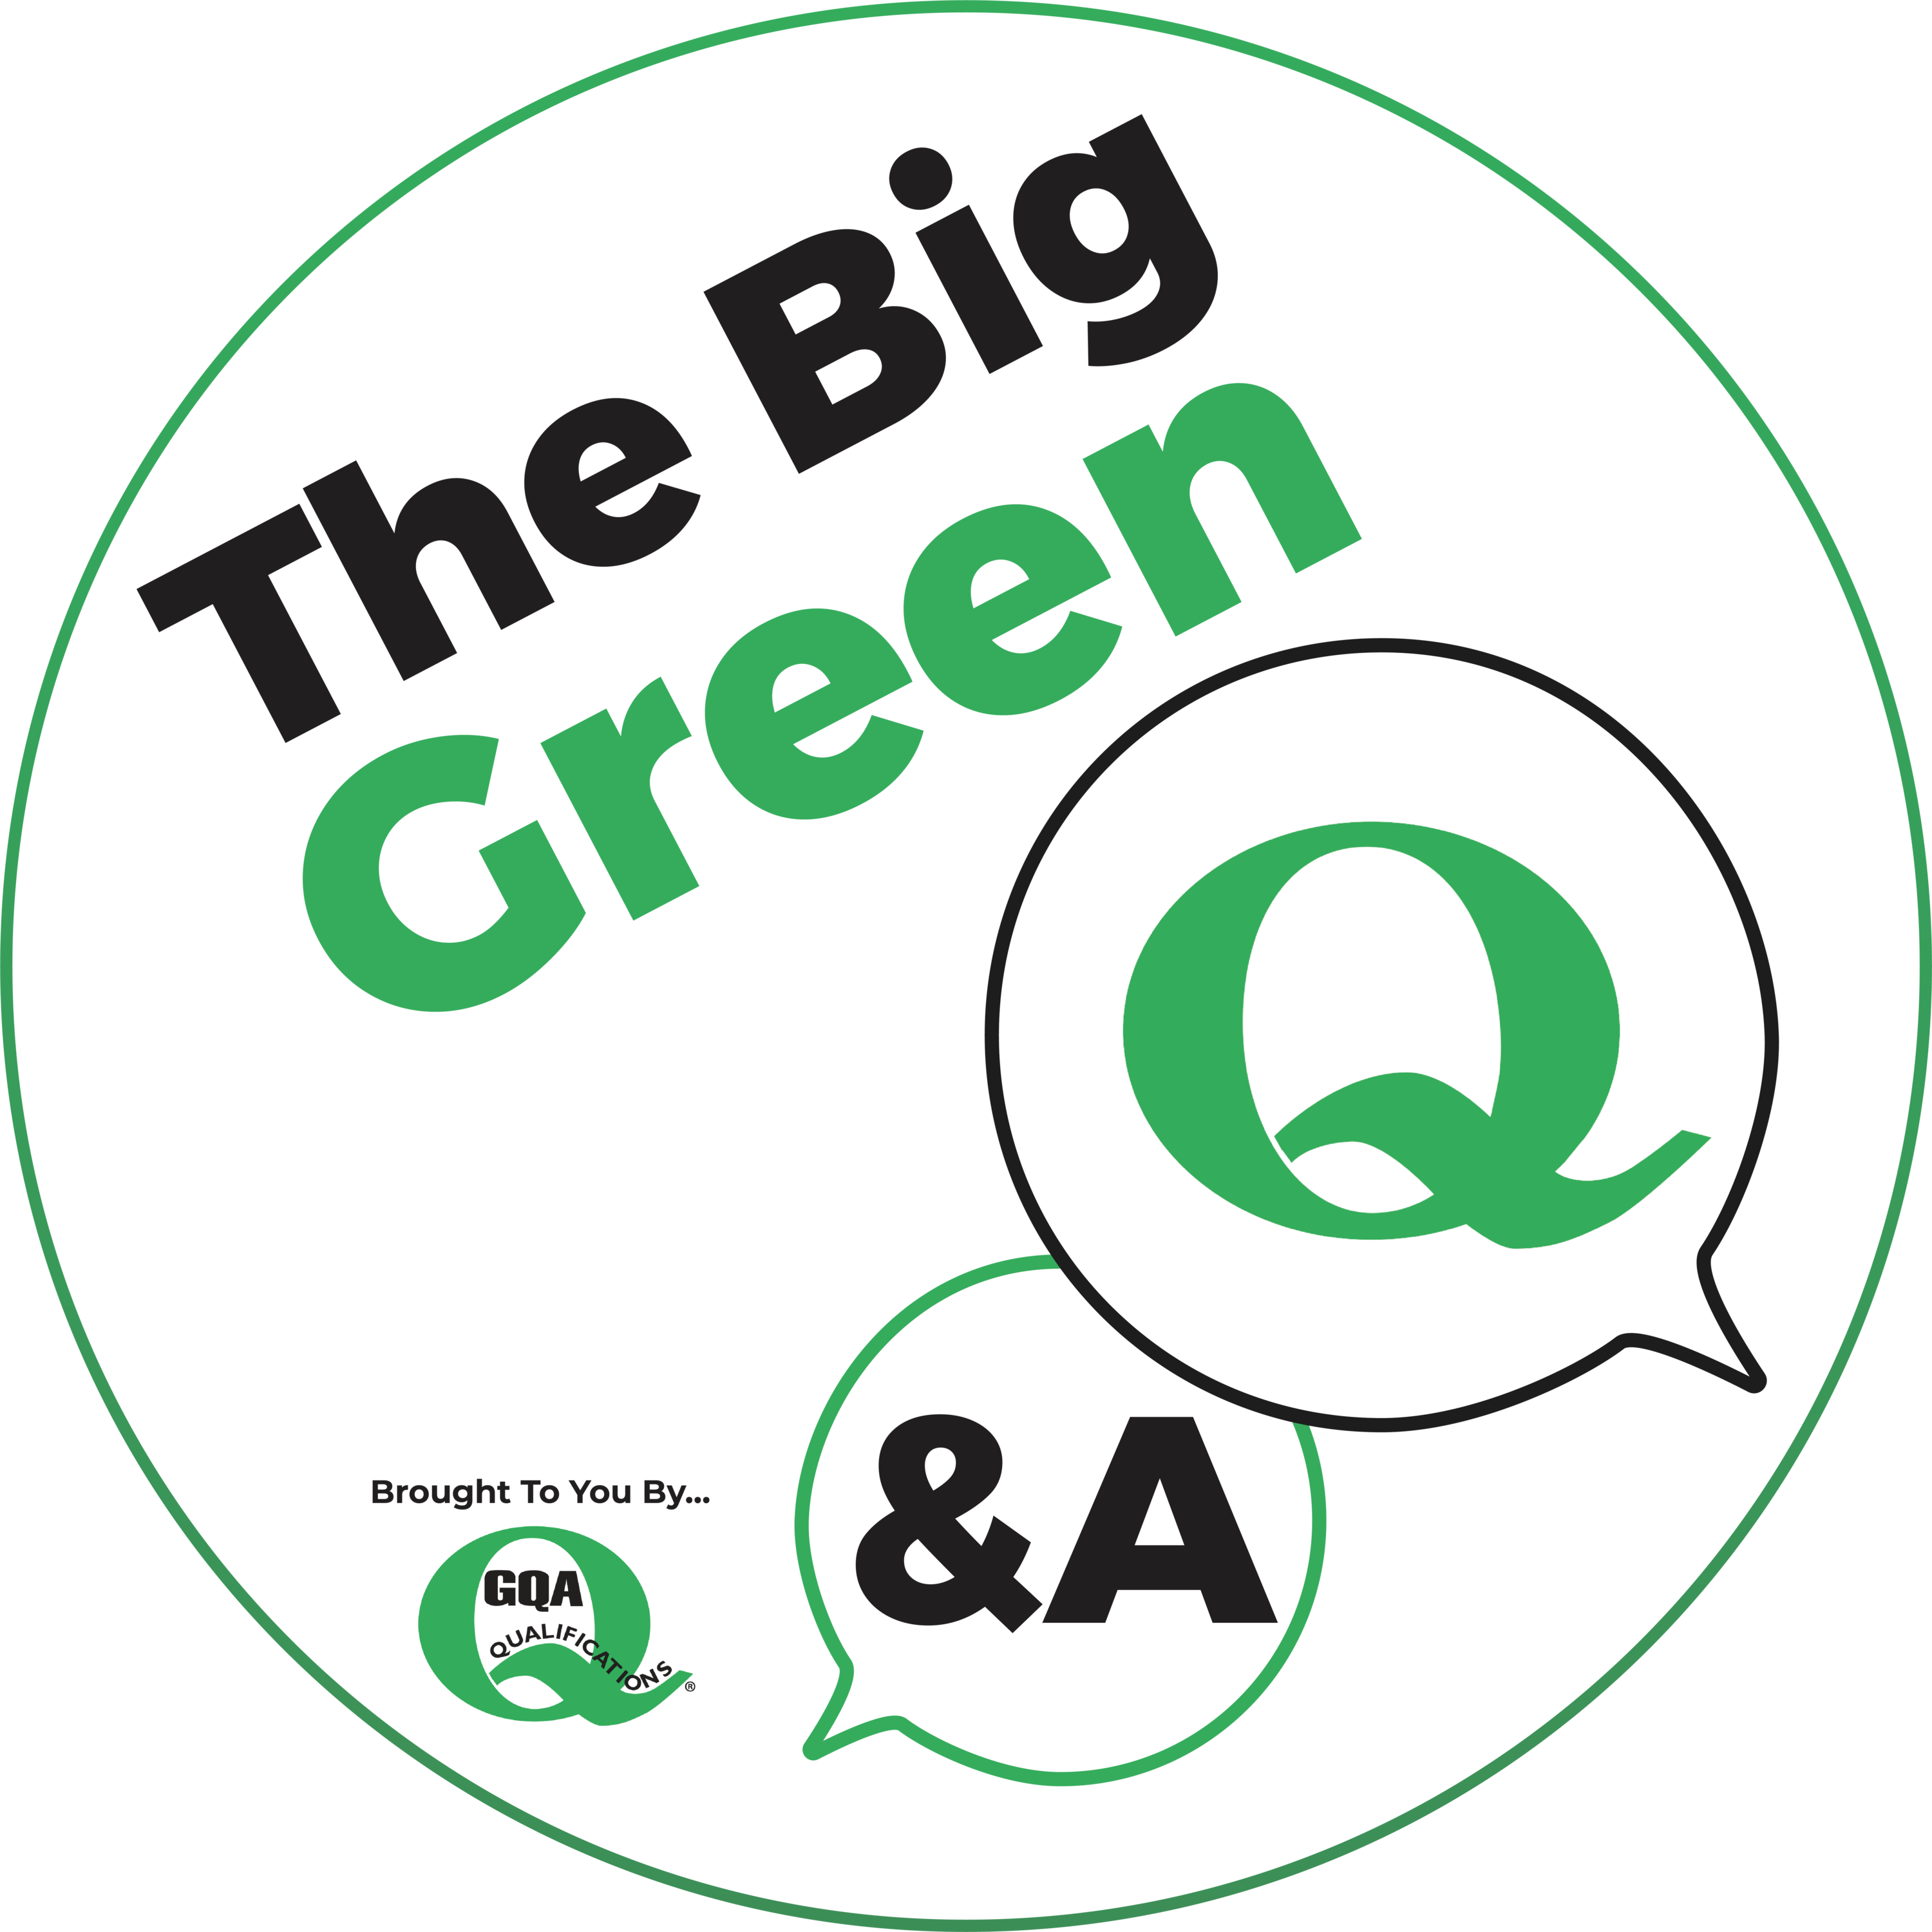 The Big Green Q&A